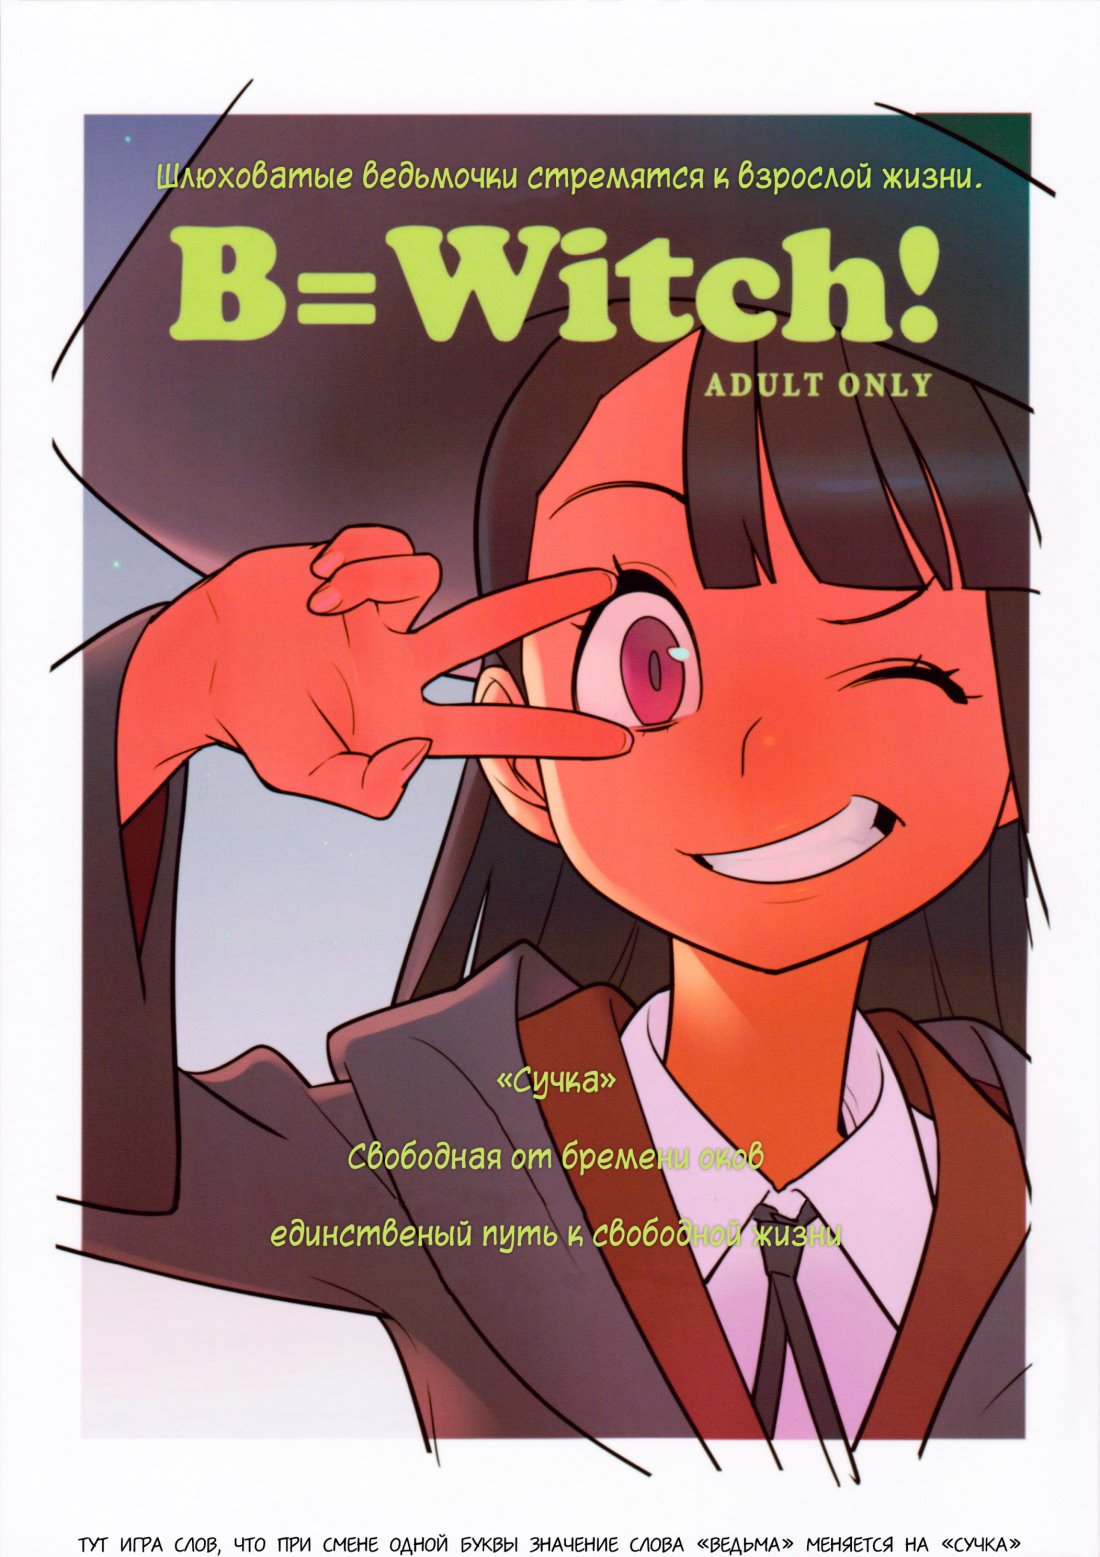 B=Witch